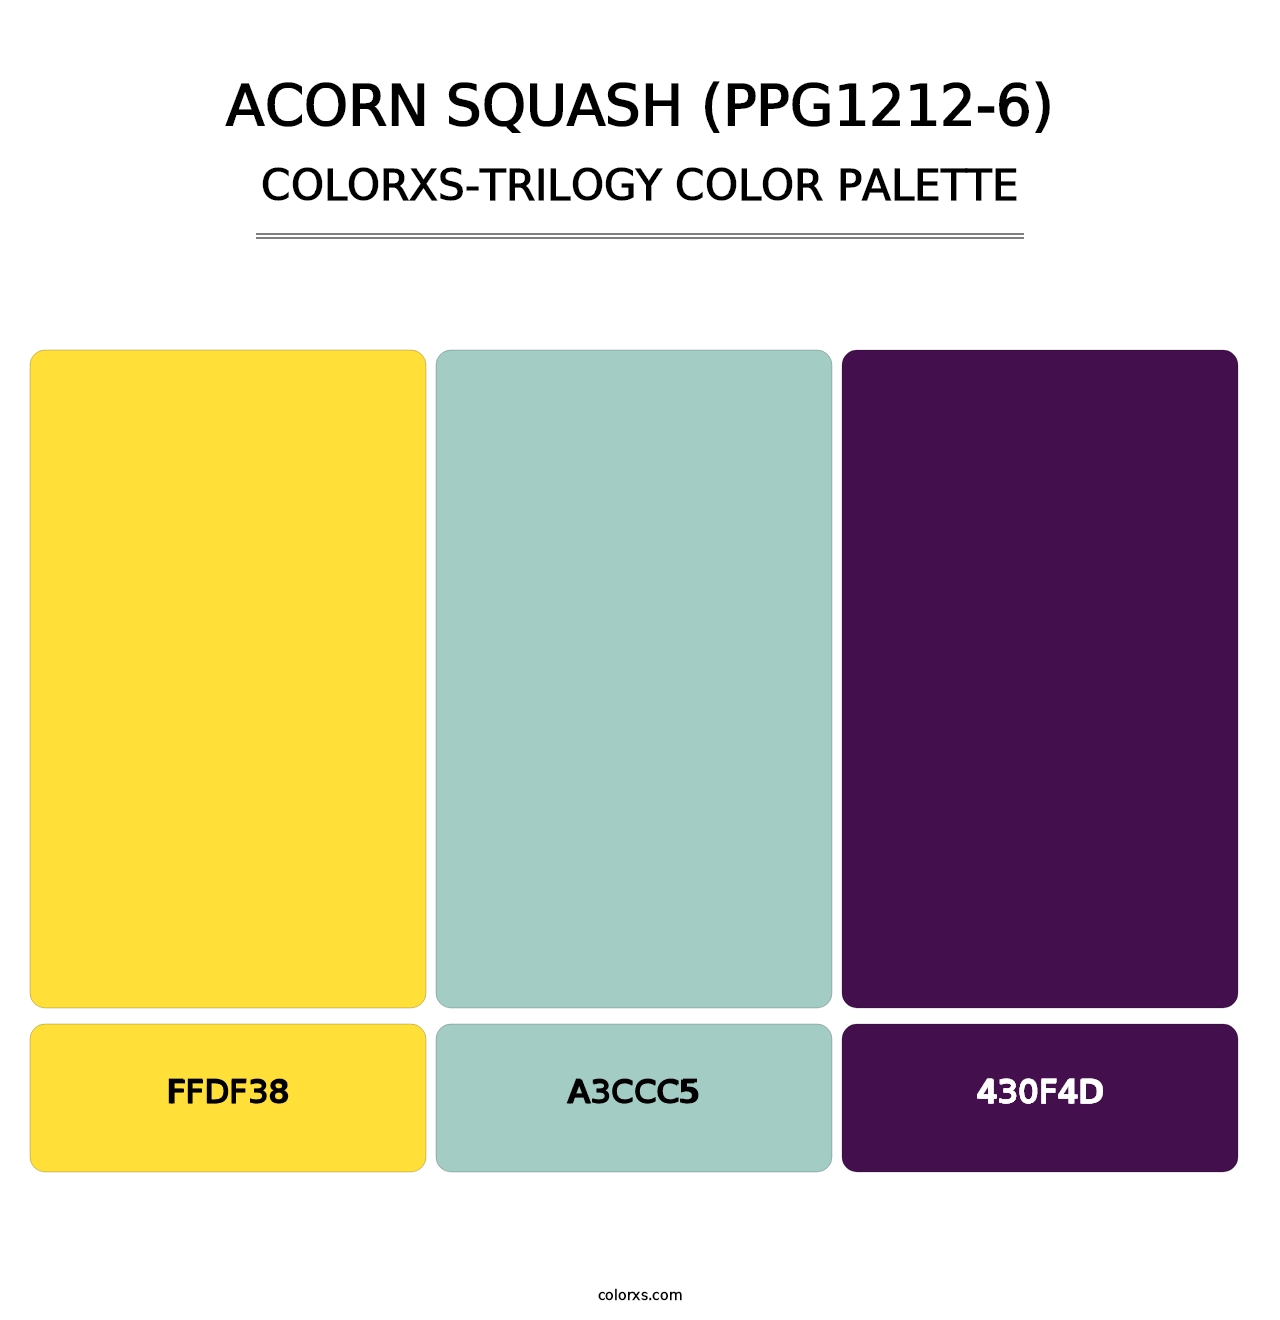 Acorn Squash (PPG1212-6) - Colorxs Trilogy Palette